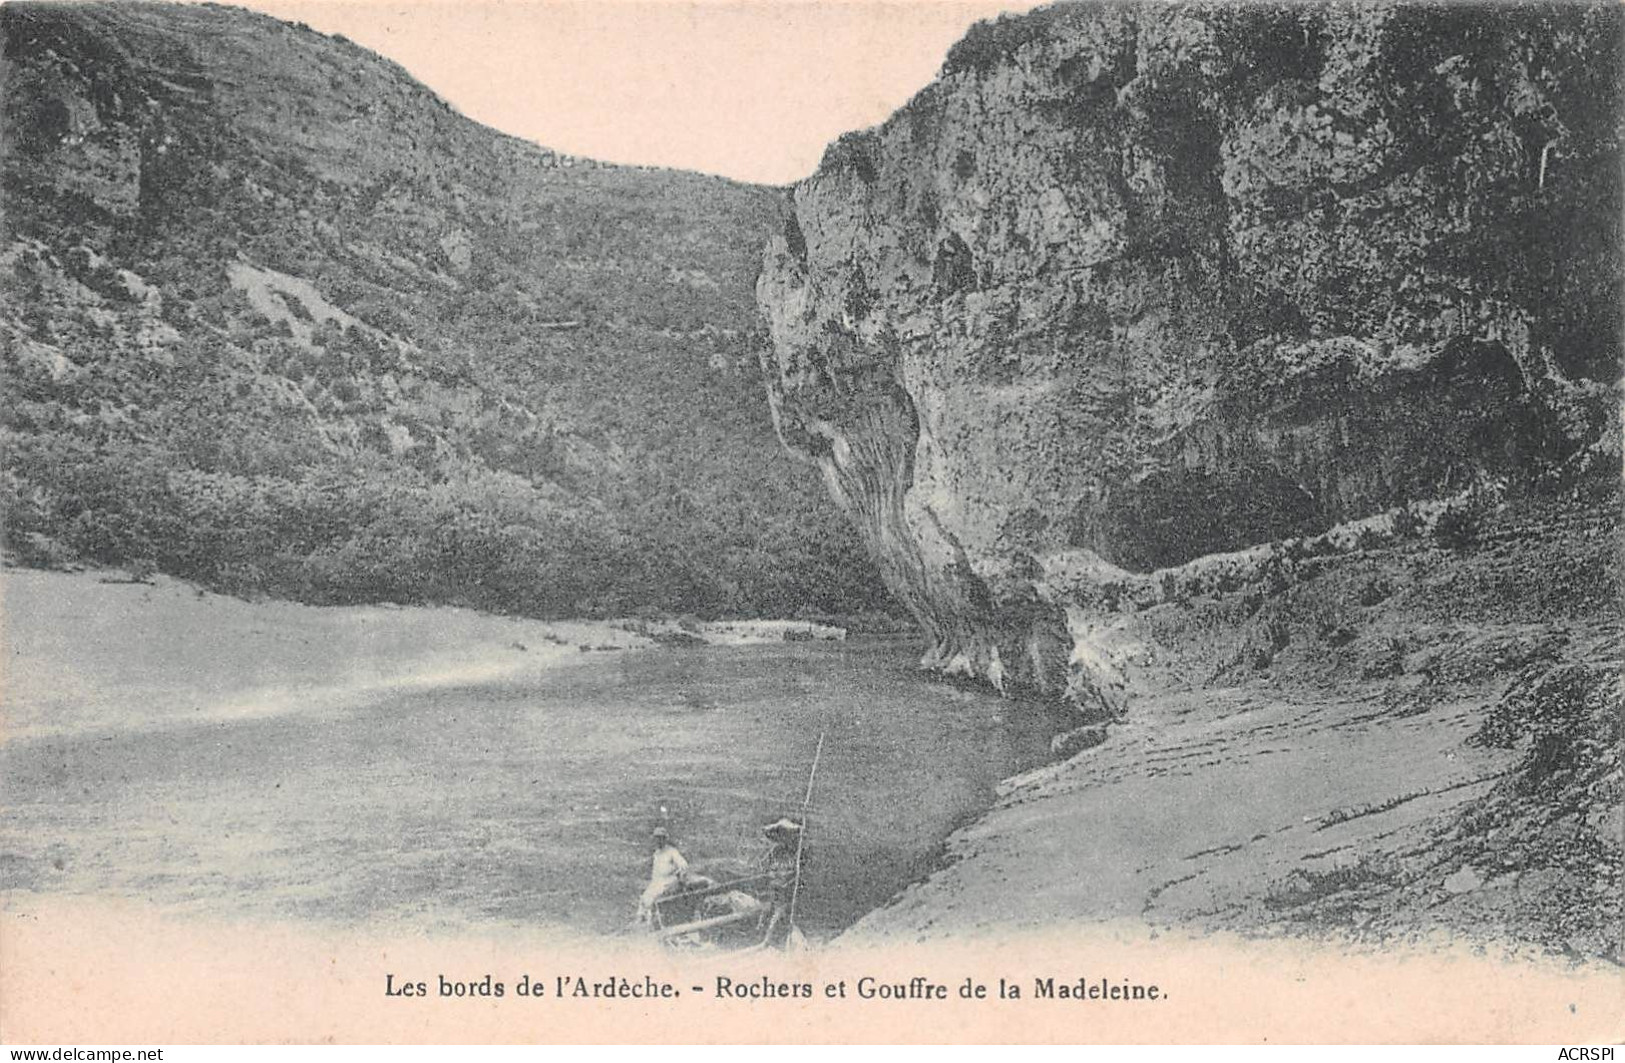 07  VALLON PONT D'ARC Gouffre Et Rochers De La Madeleine Gorges De L'Ardèche    (Scan R/V) N°   57   \MS9009 - Vallon Pont D'Arc